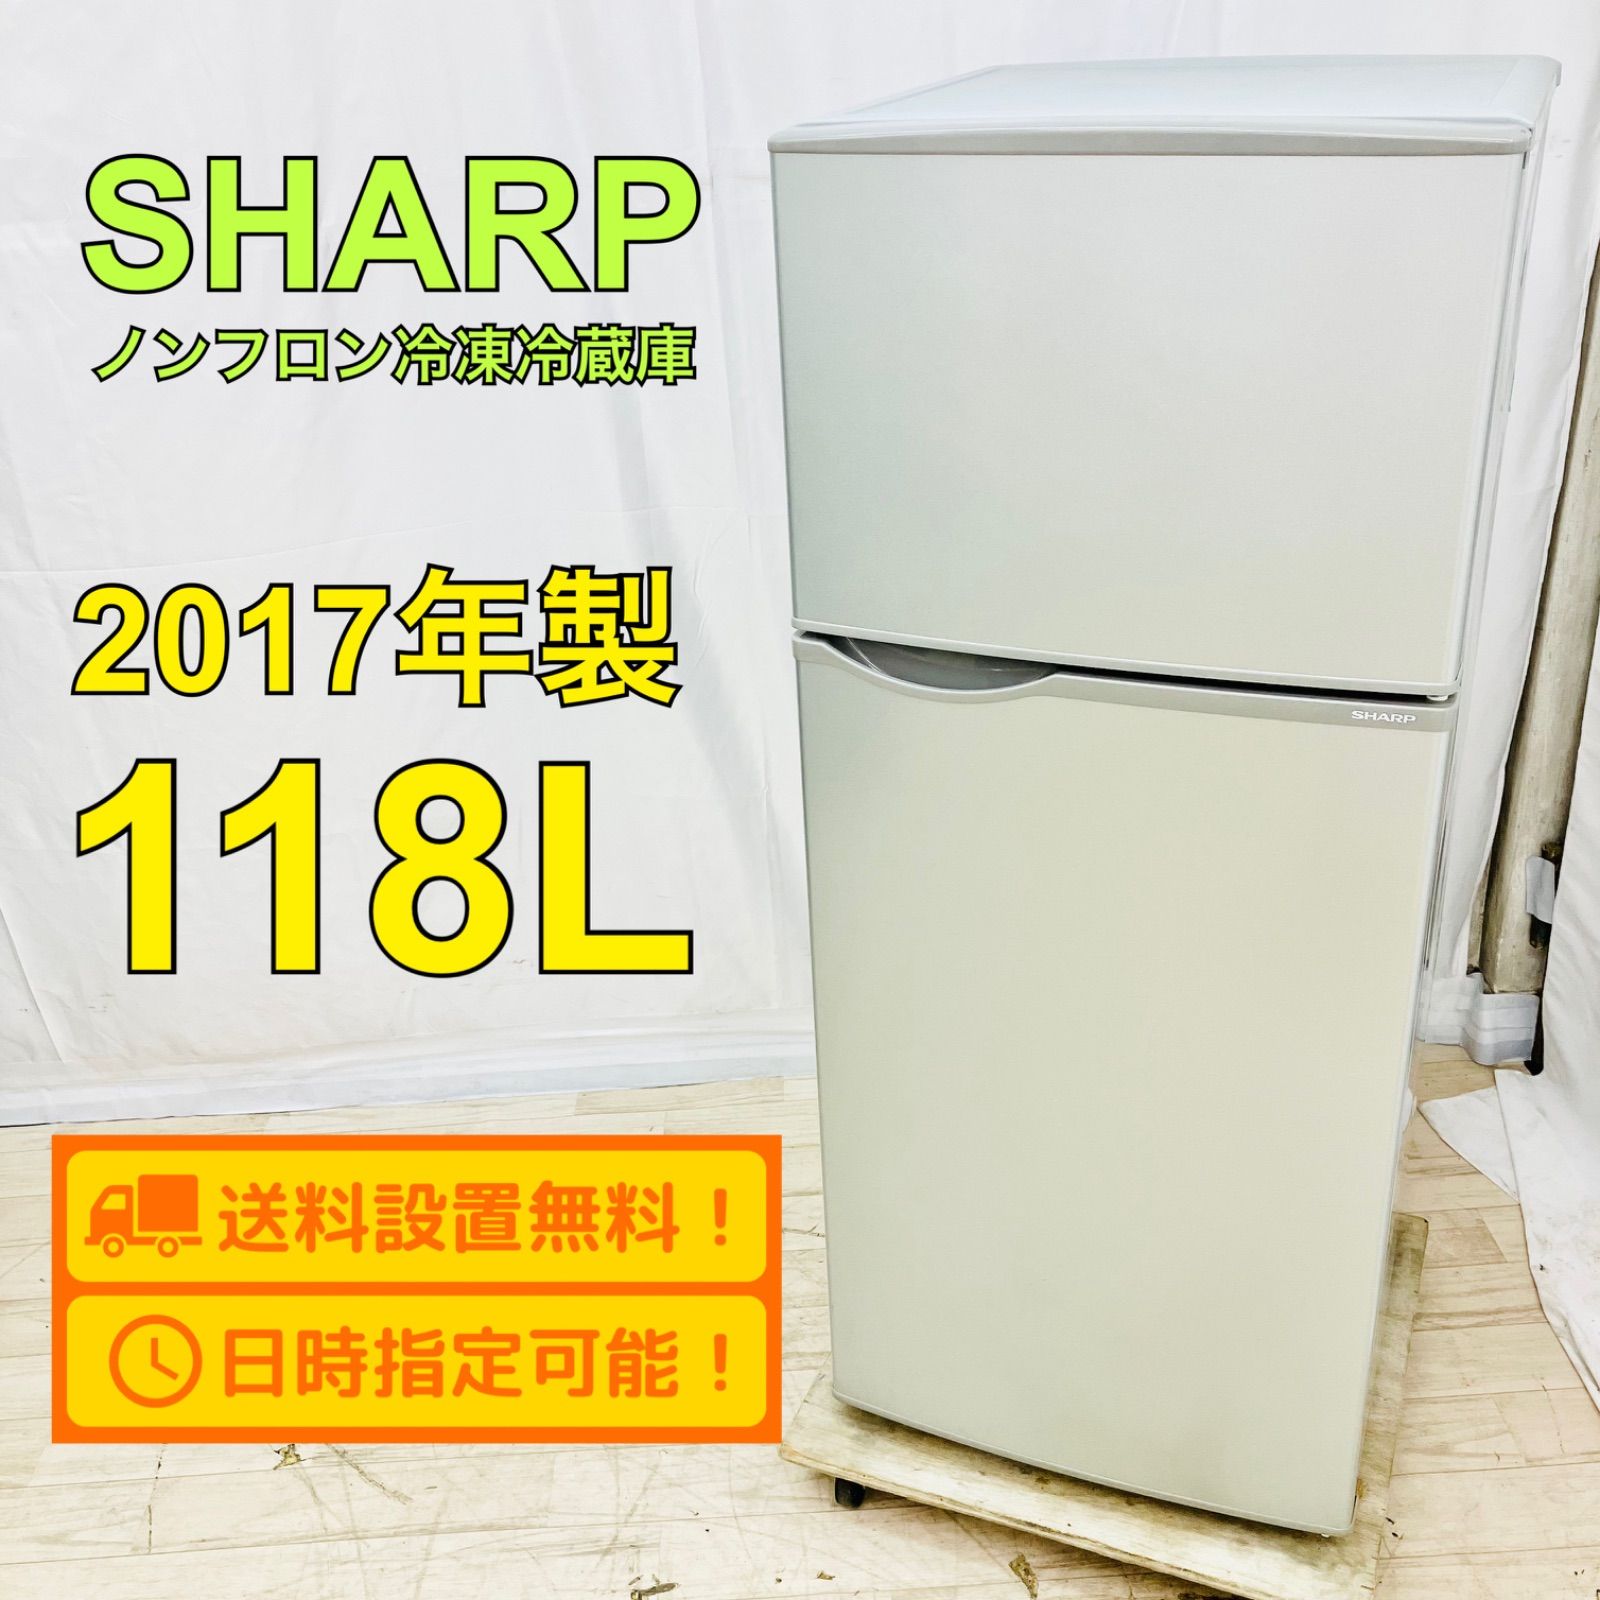 シャープ家庭用冷凍庫 SHARP - 生活家電